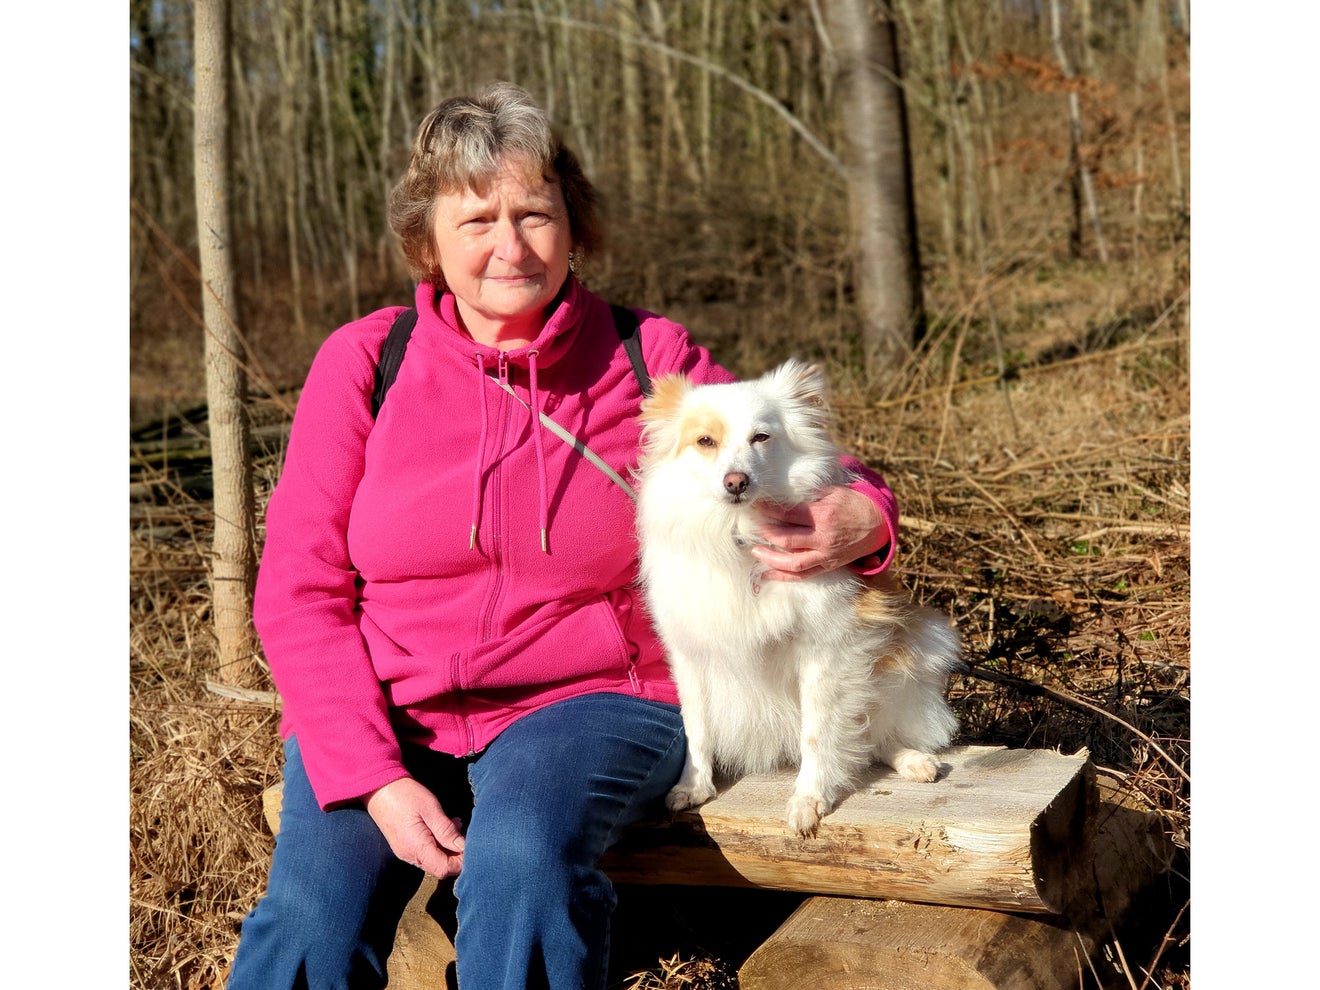 Auf dem Bild ist Agnes gemeinsam mit ihrem Hund im Wald abgebildet.